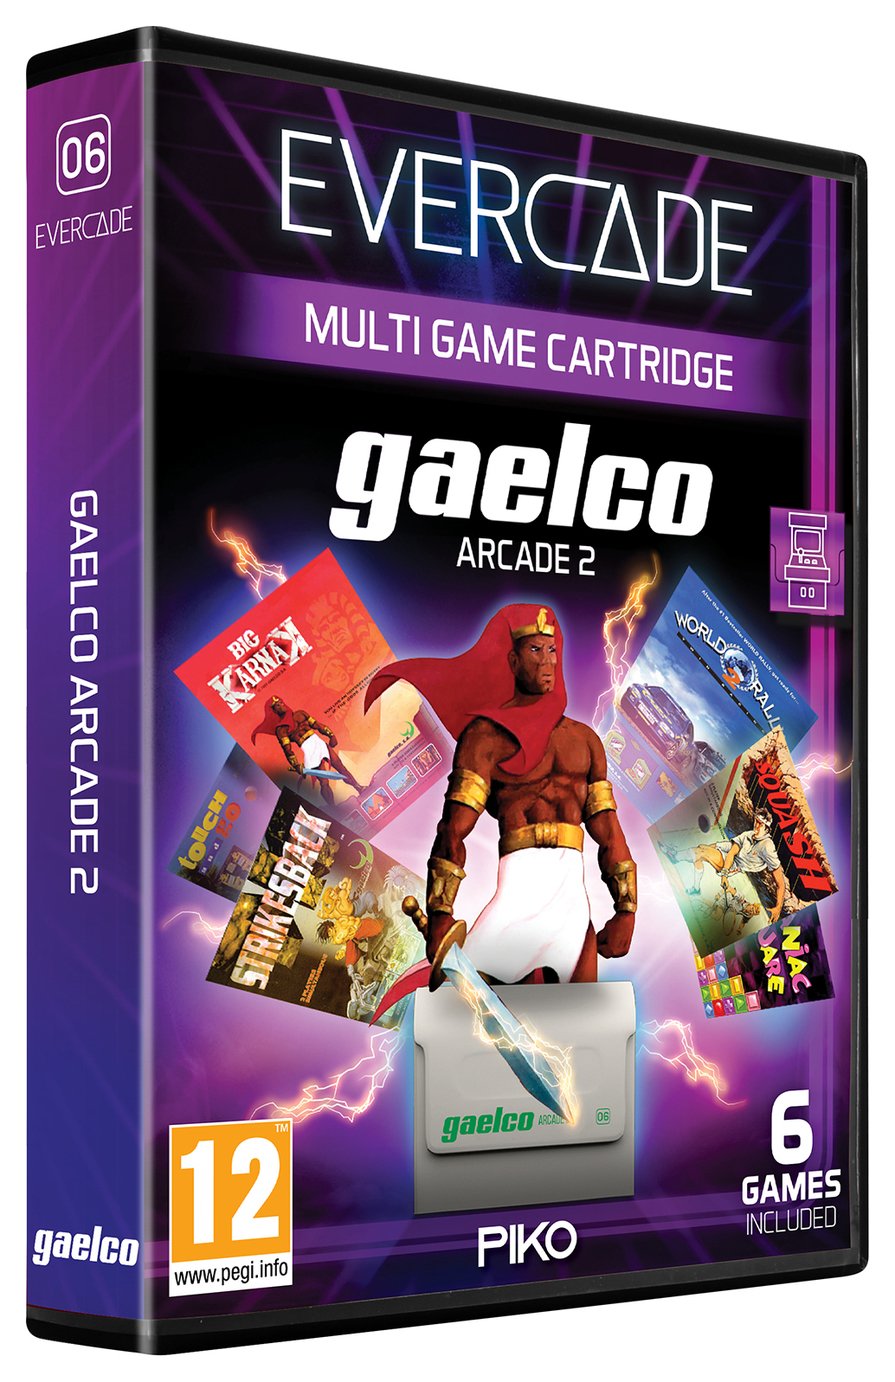 Evercade Cartridge 06: Gaelco Arcade 2 Collection 2